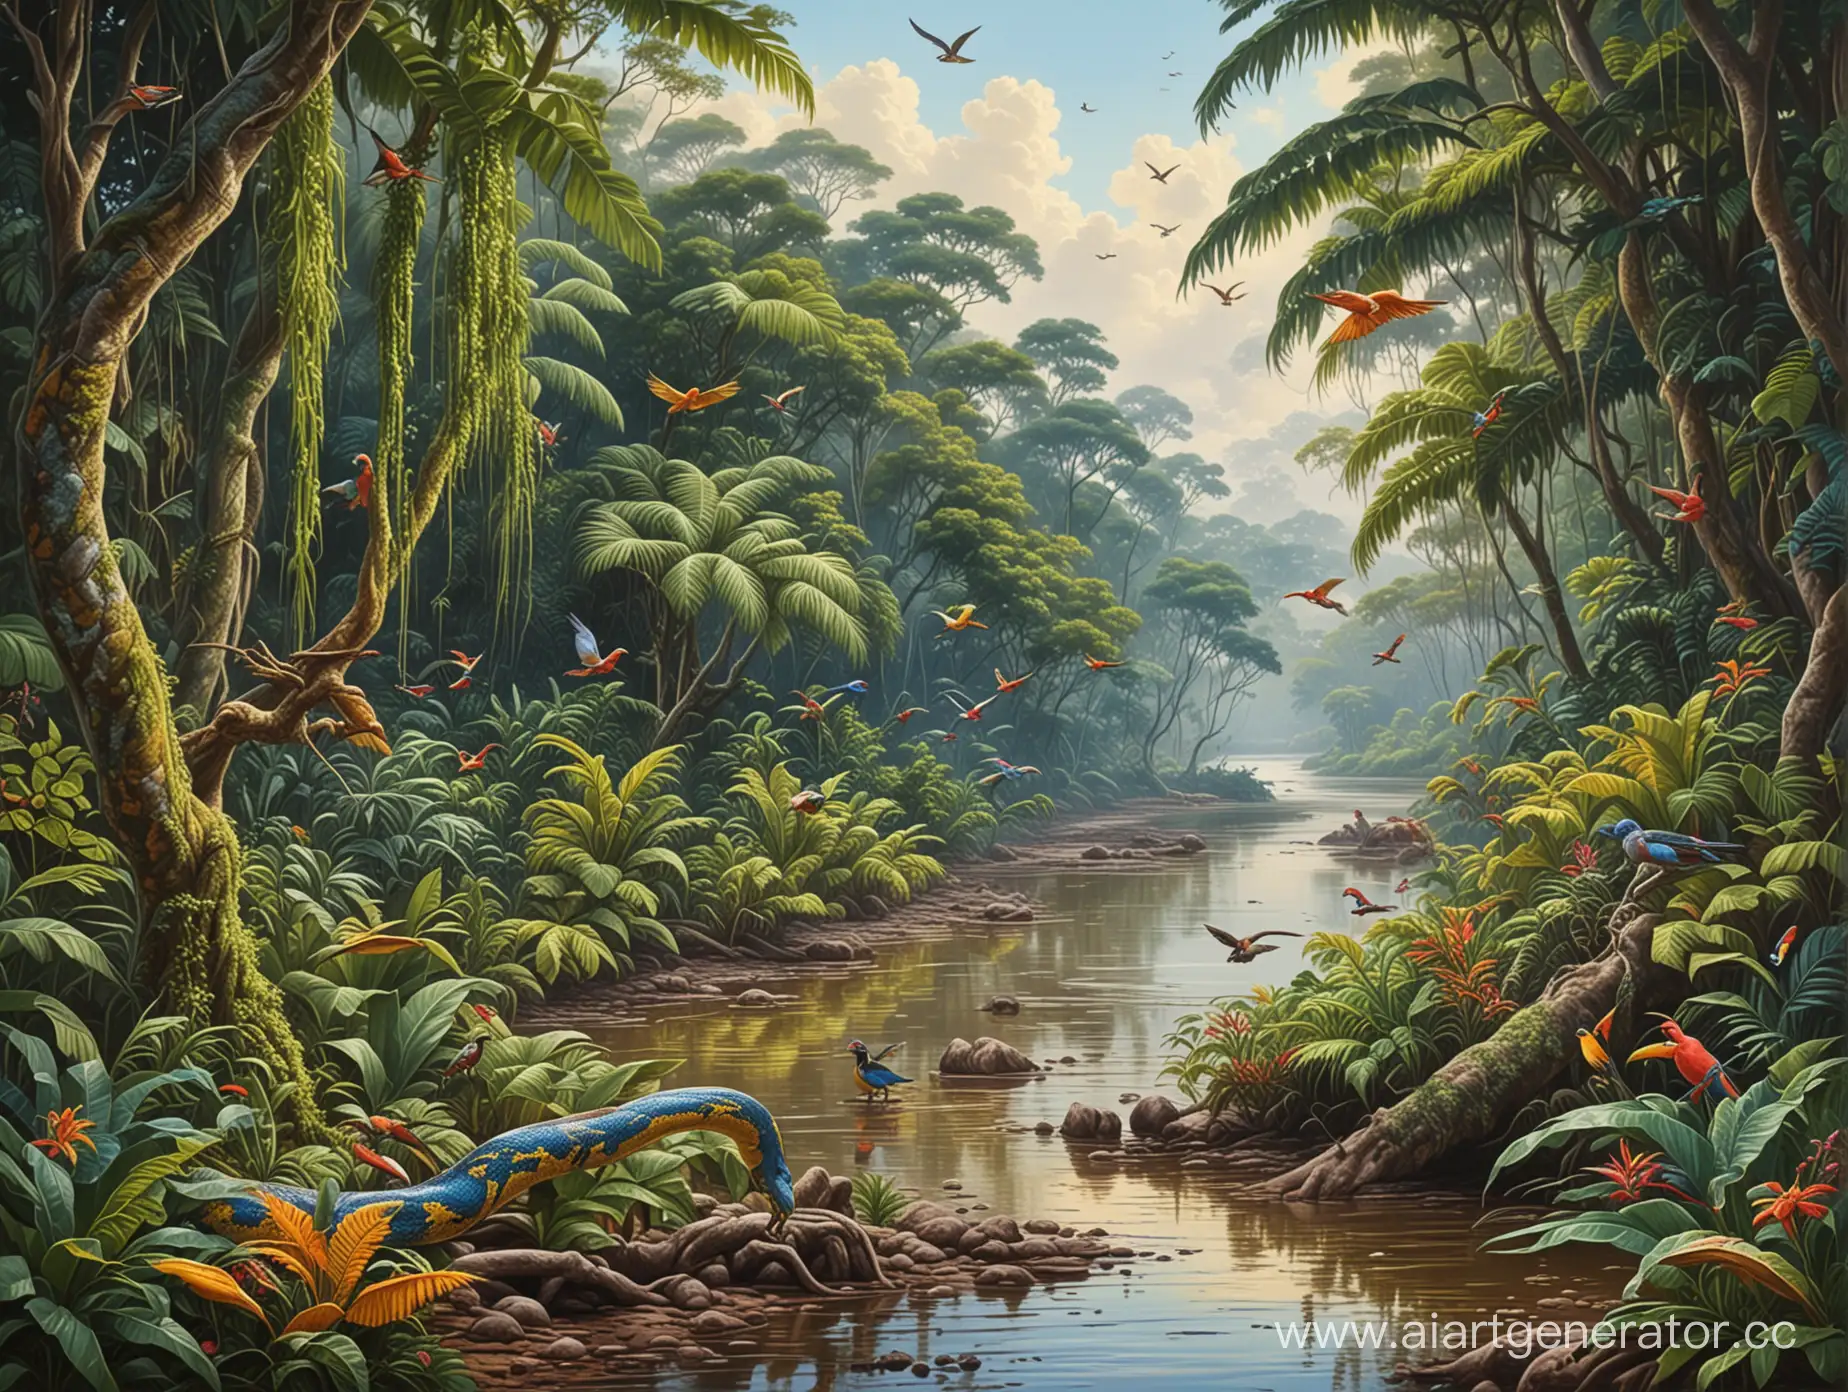 Великолепный пейзаж, амазонская сельва, мутная река, берега, заросшие тропической растительностью, сетчатый питон, райские птицы, профессиональный, реалистичный, цветной рисунок, масло, живопись, шедевр.